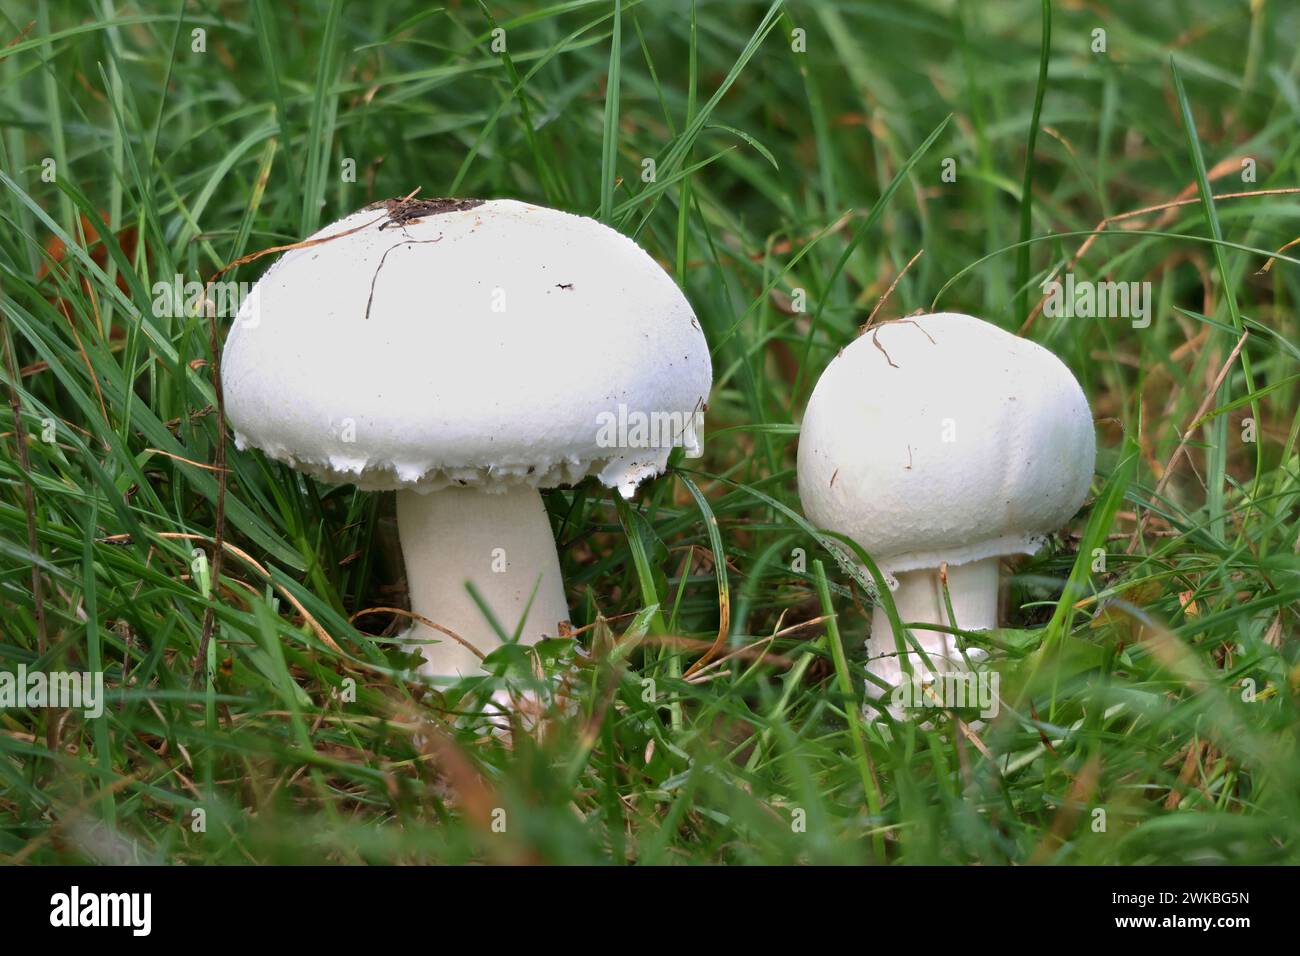 Fungo di campo (Agaricus campestris), due funghi prati in un prato, Germania, Meclemburgo-Pomerania occidentale Foto Stock